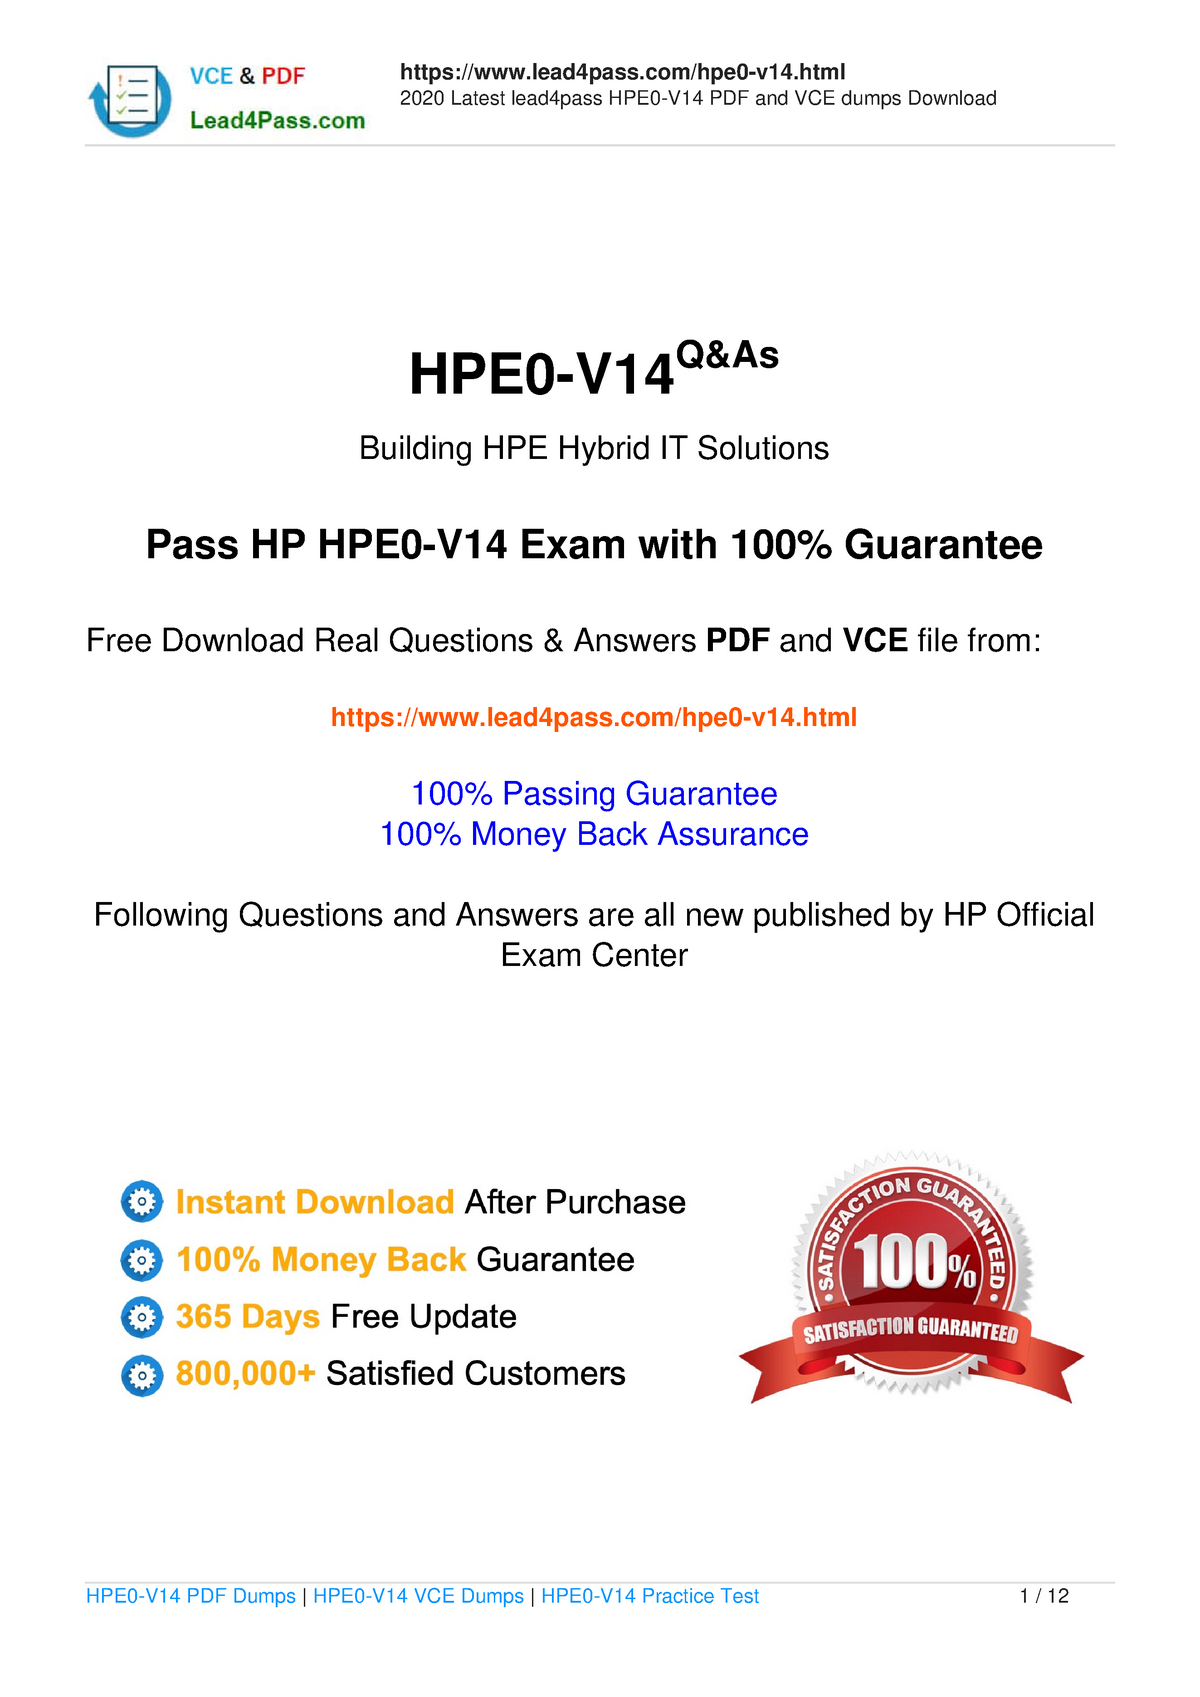 HPE2-E72 Exam Duration